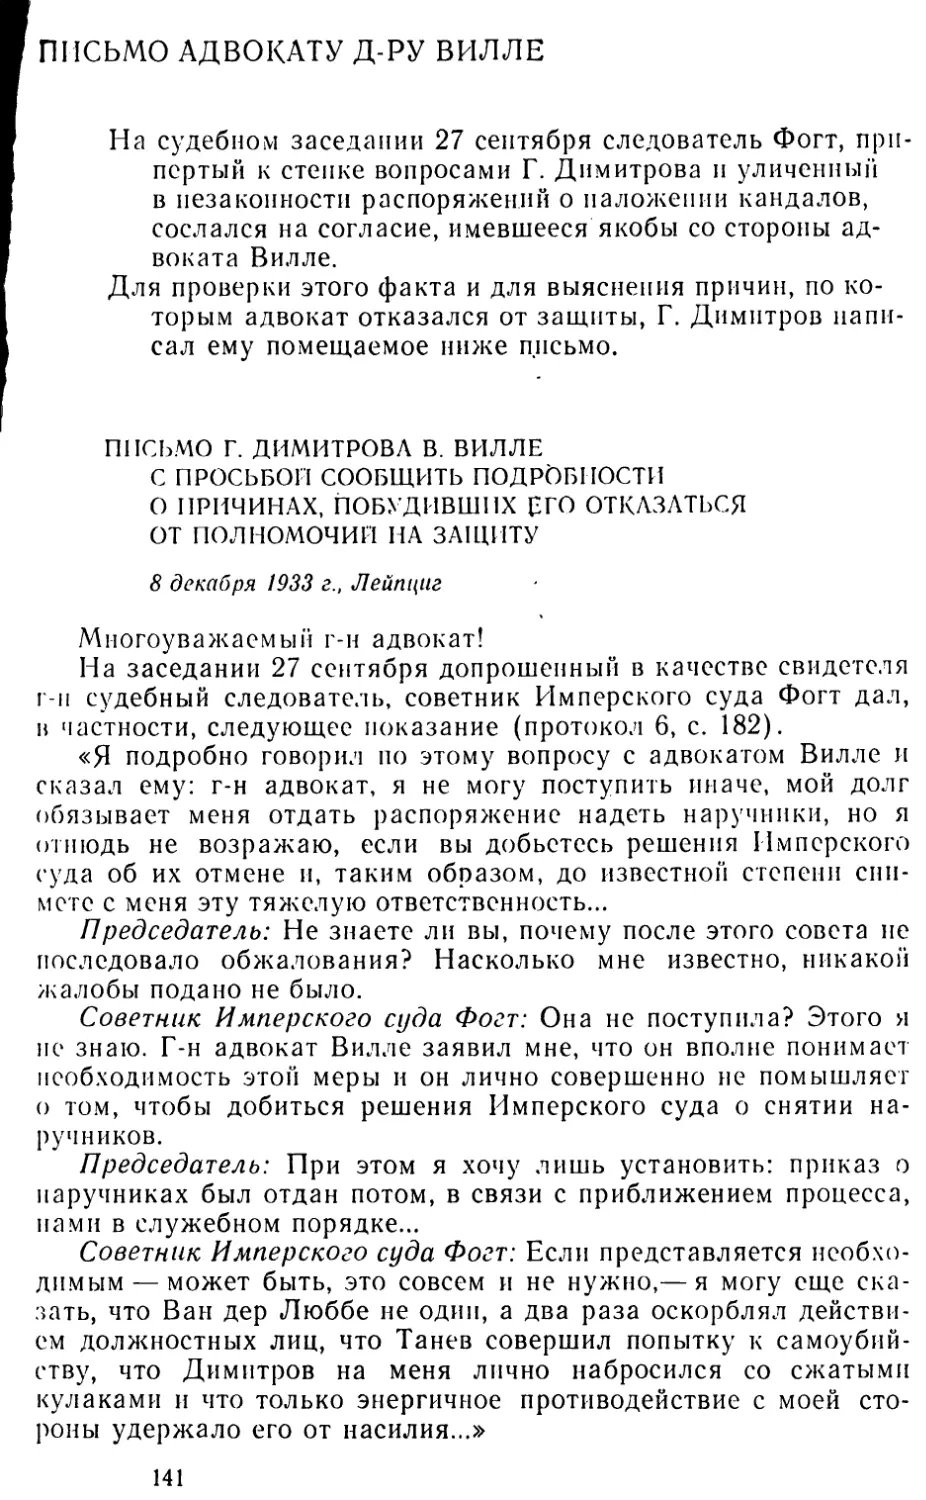 Письмо адвокату д-ру Вилле
Письмо Г. Димитрова В. Вилле с просьбой сообщить подробности о причинах, побудивших его отказаться от полномочий на защиту. 8 декабря 1933 г